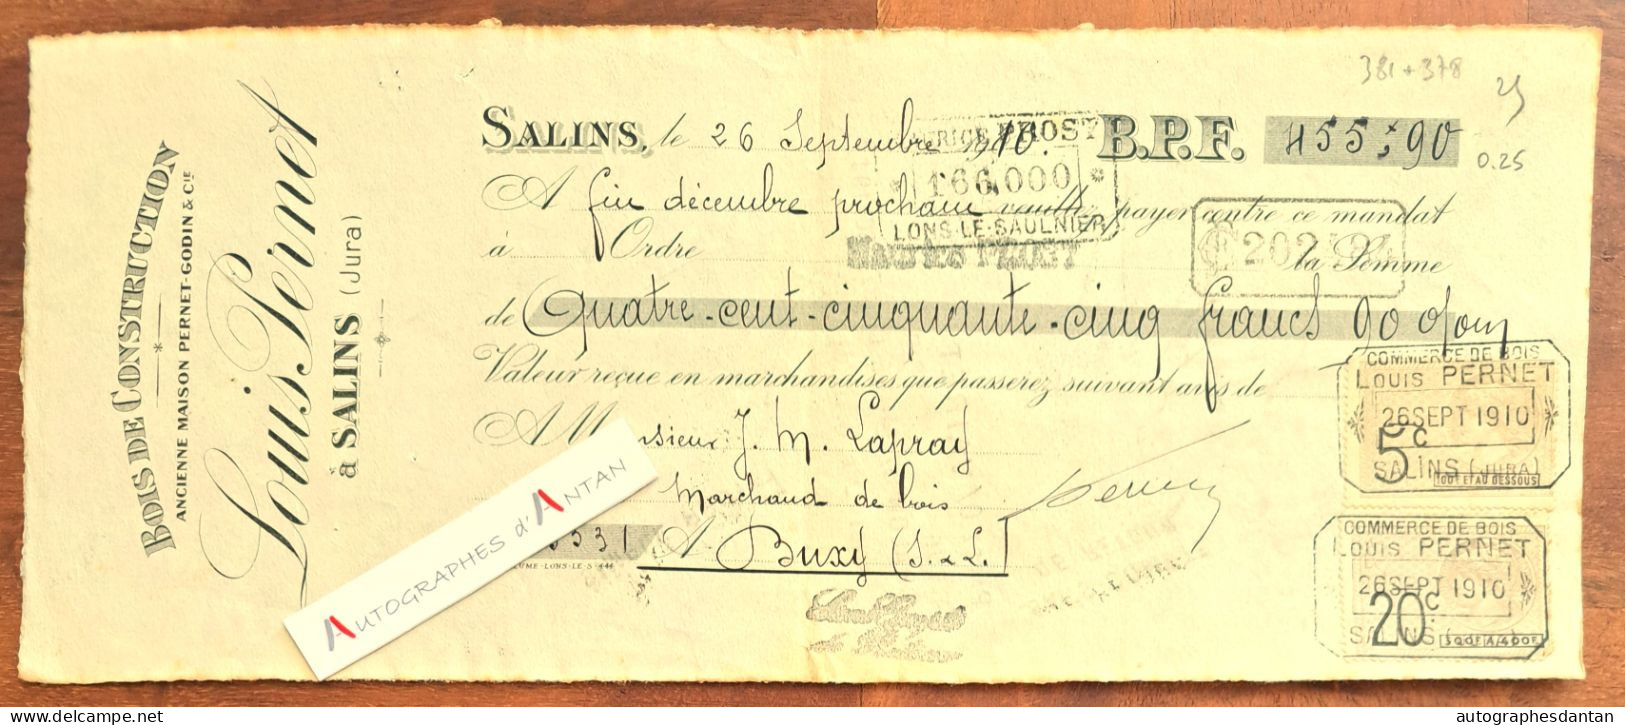 ● SALINS 1910 Louis PERNET Bois De Construction (Jura) - Mandat à M. Lapray à Buxy (Saône Et Loire) - Godin - Letras De Cambio